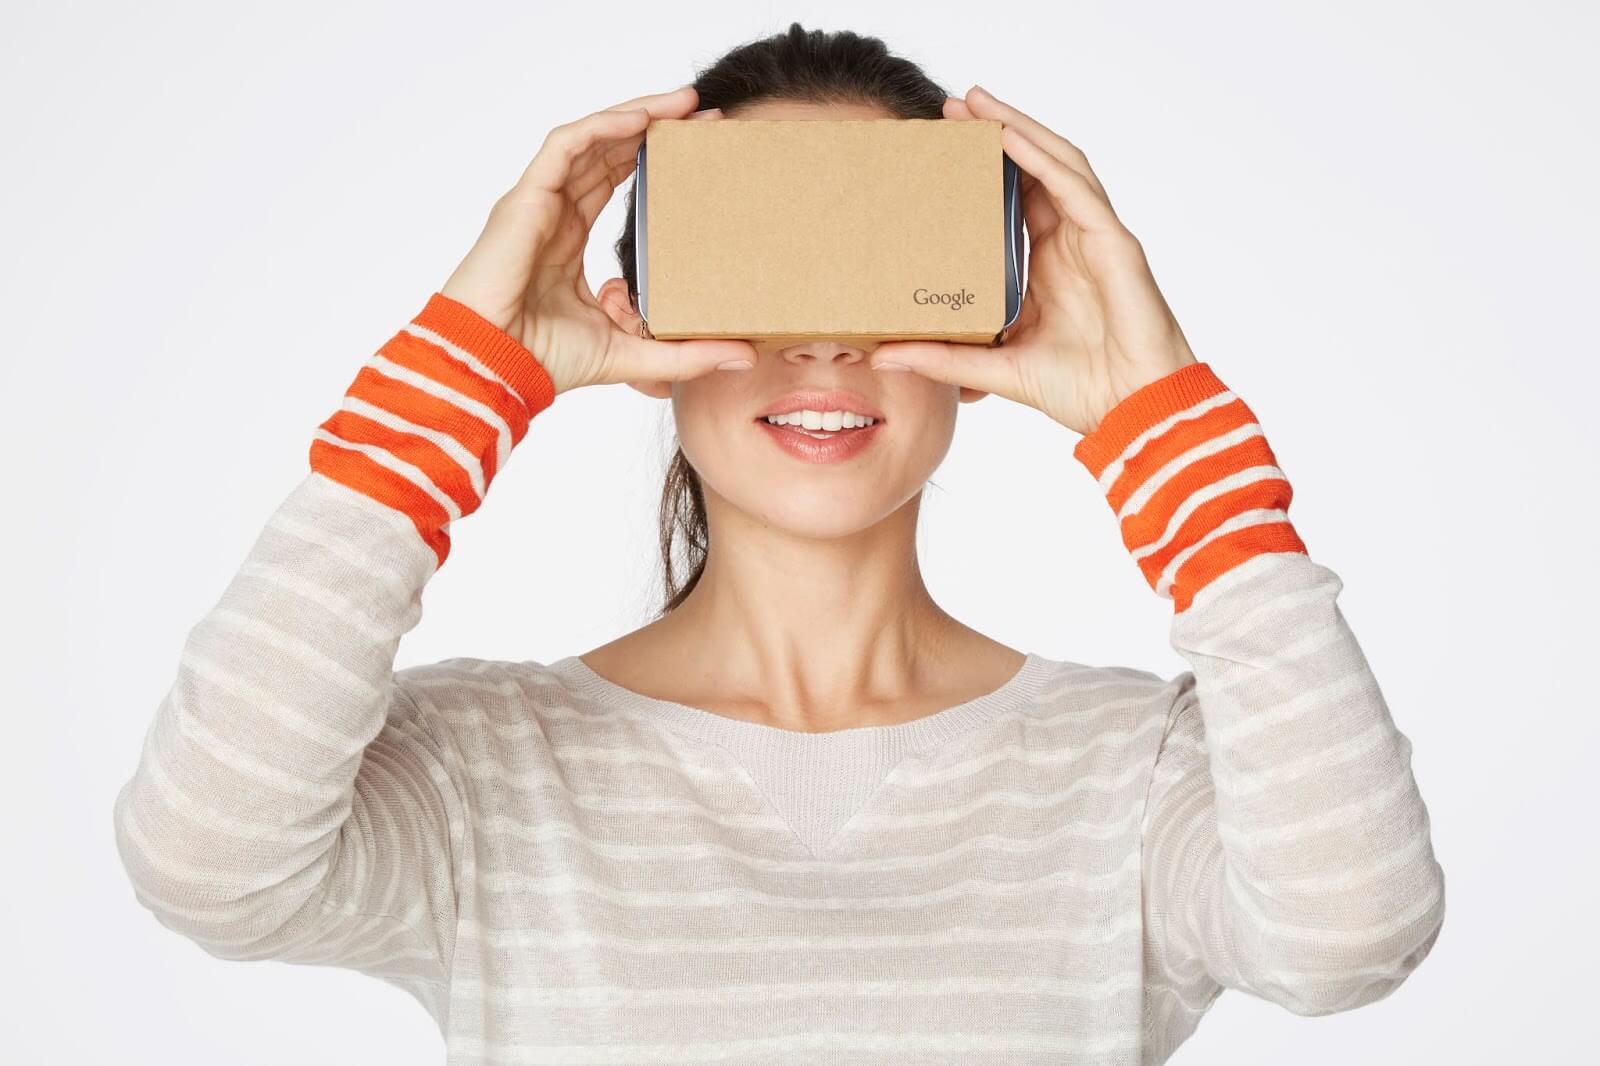 Google is open sourcing Cardboard after killing Daydream VR platform